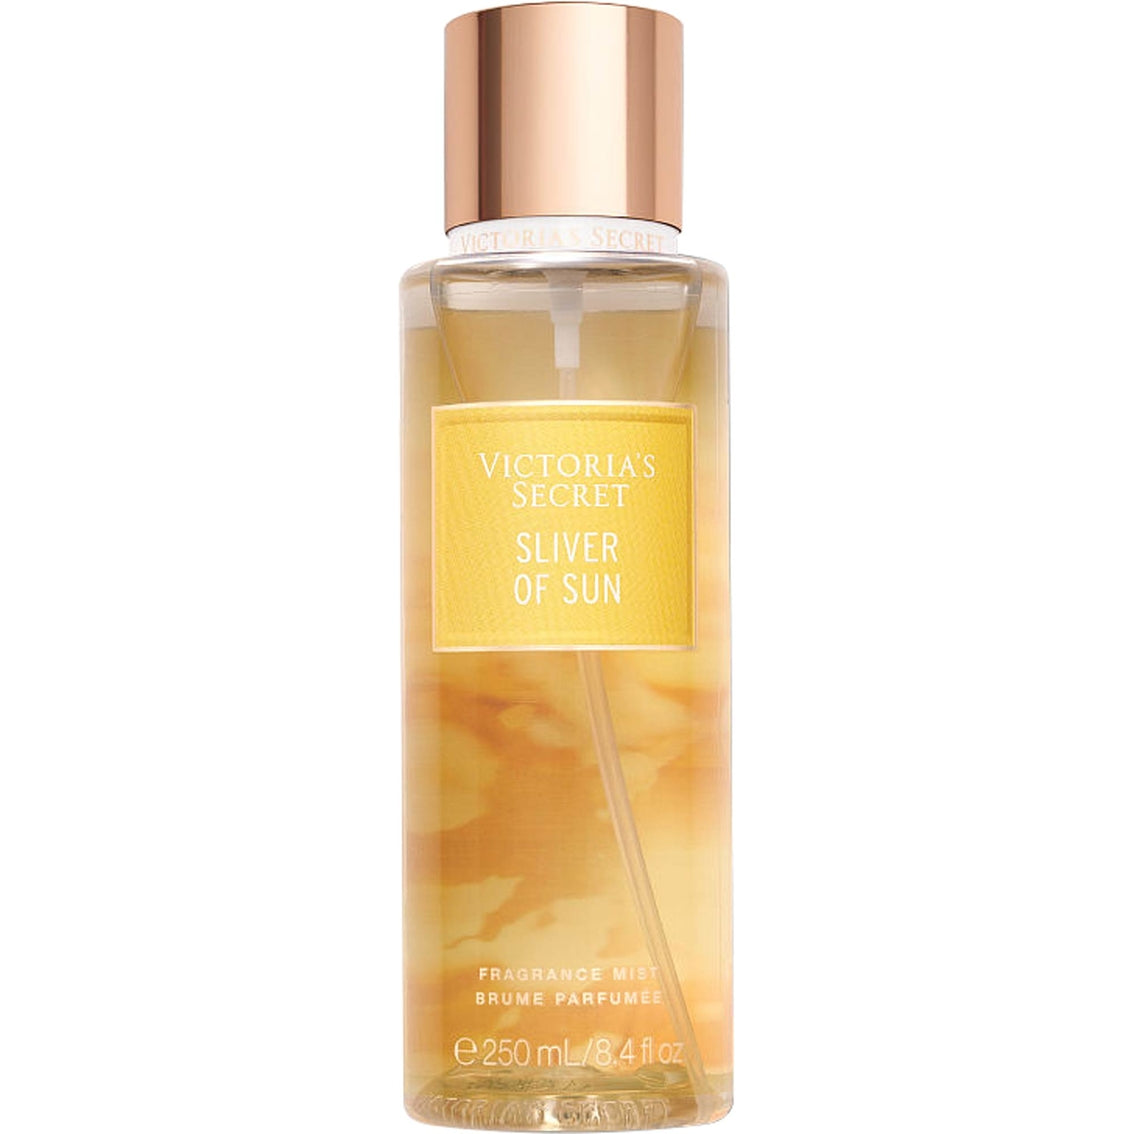 Parfums Silver Of Sun de la marque Victoria's Secret mixte 